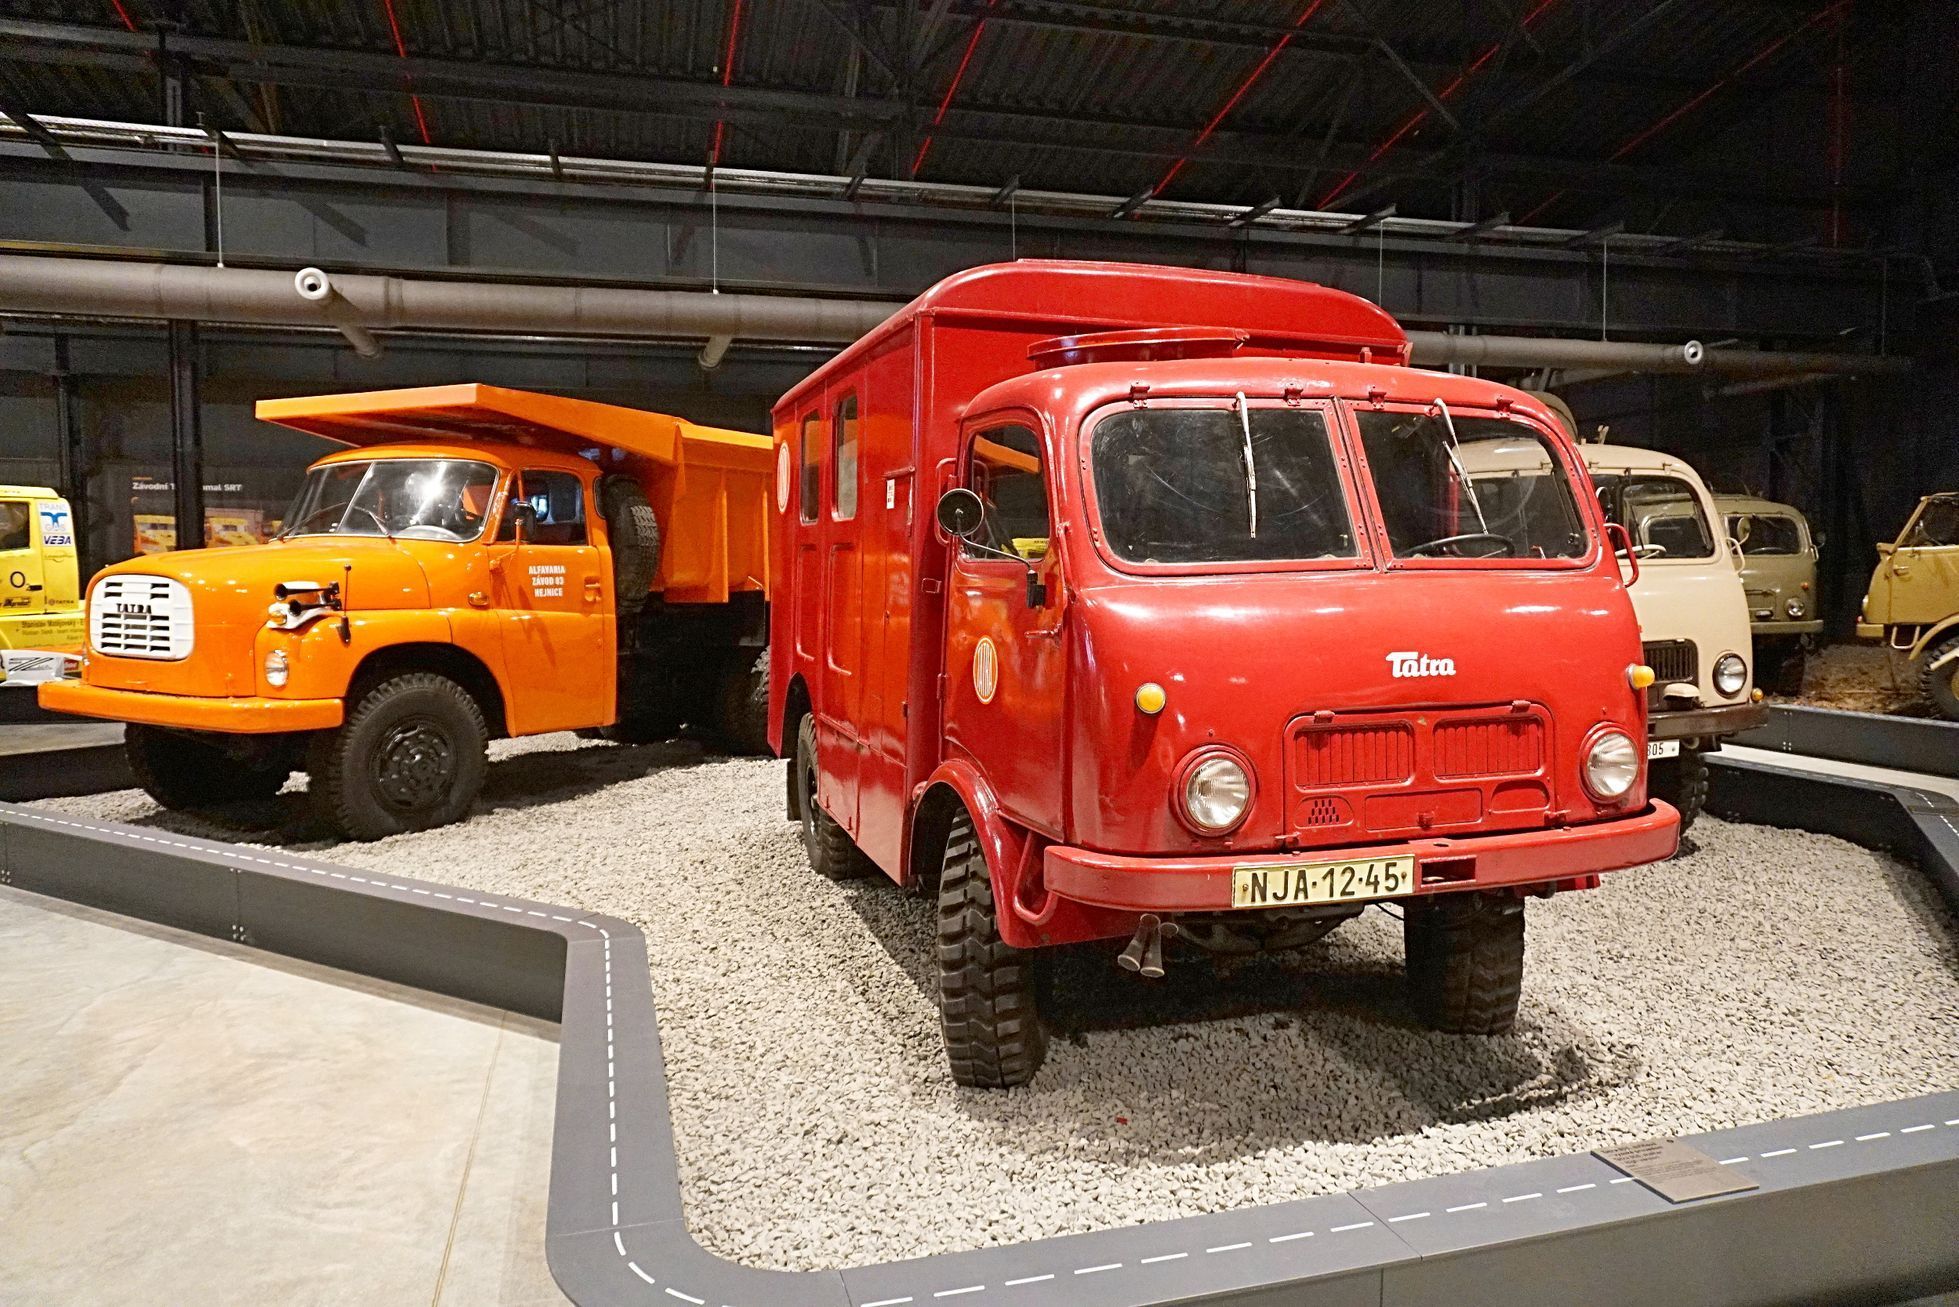 Muzeum nákladních automobilů Tatra - Kopřivnice nové muzeum